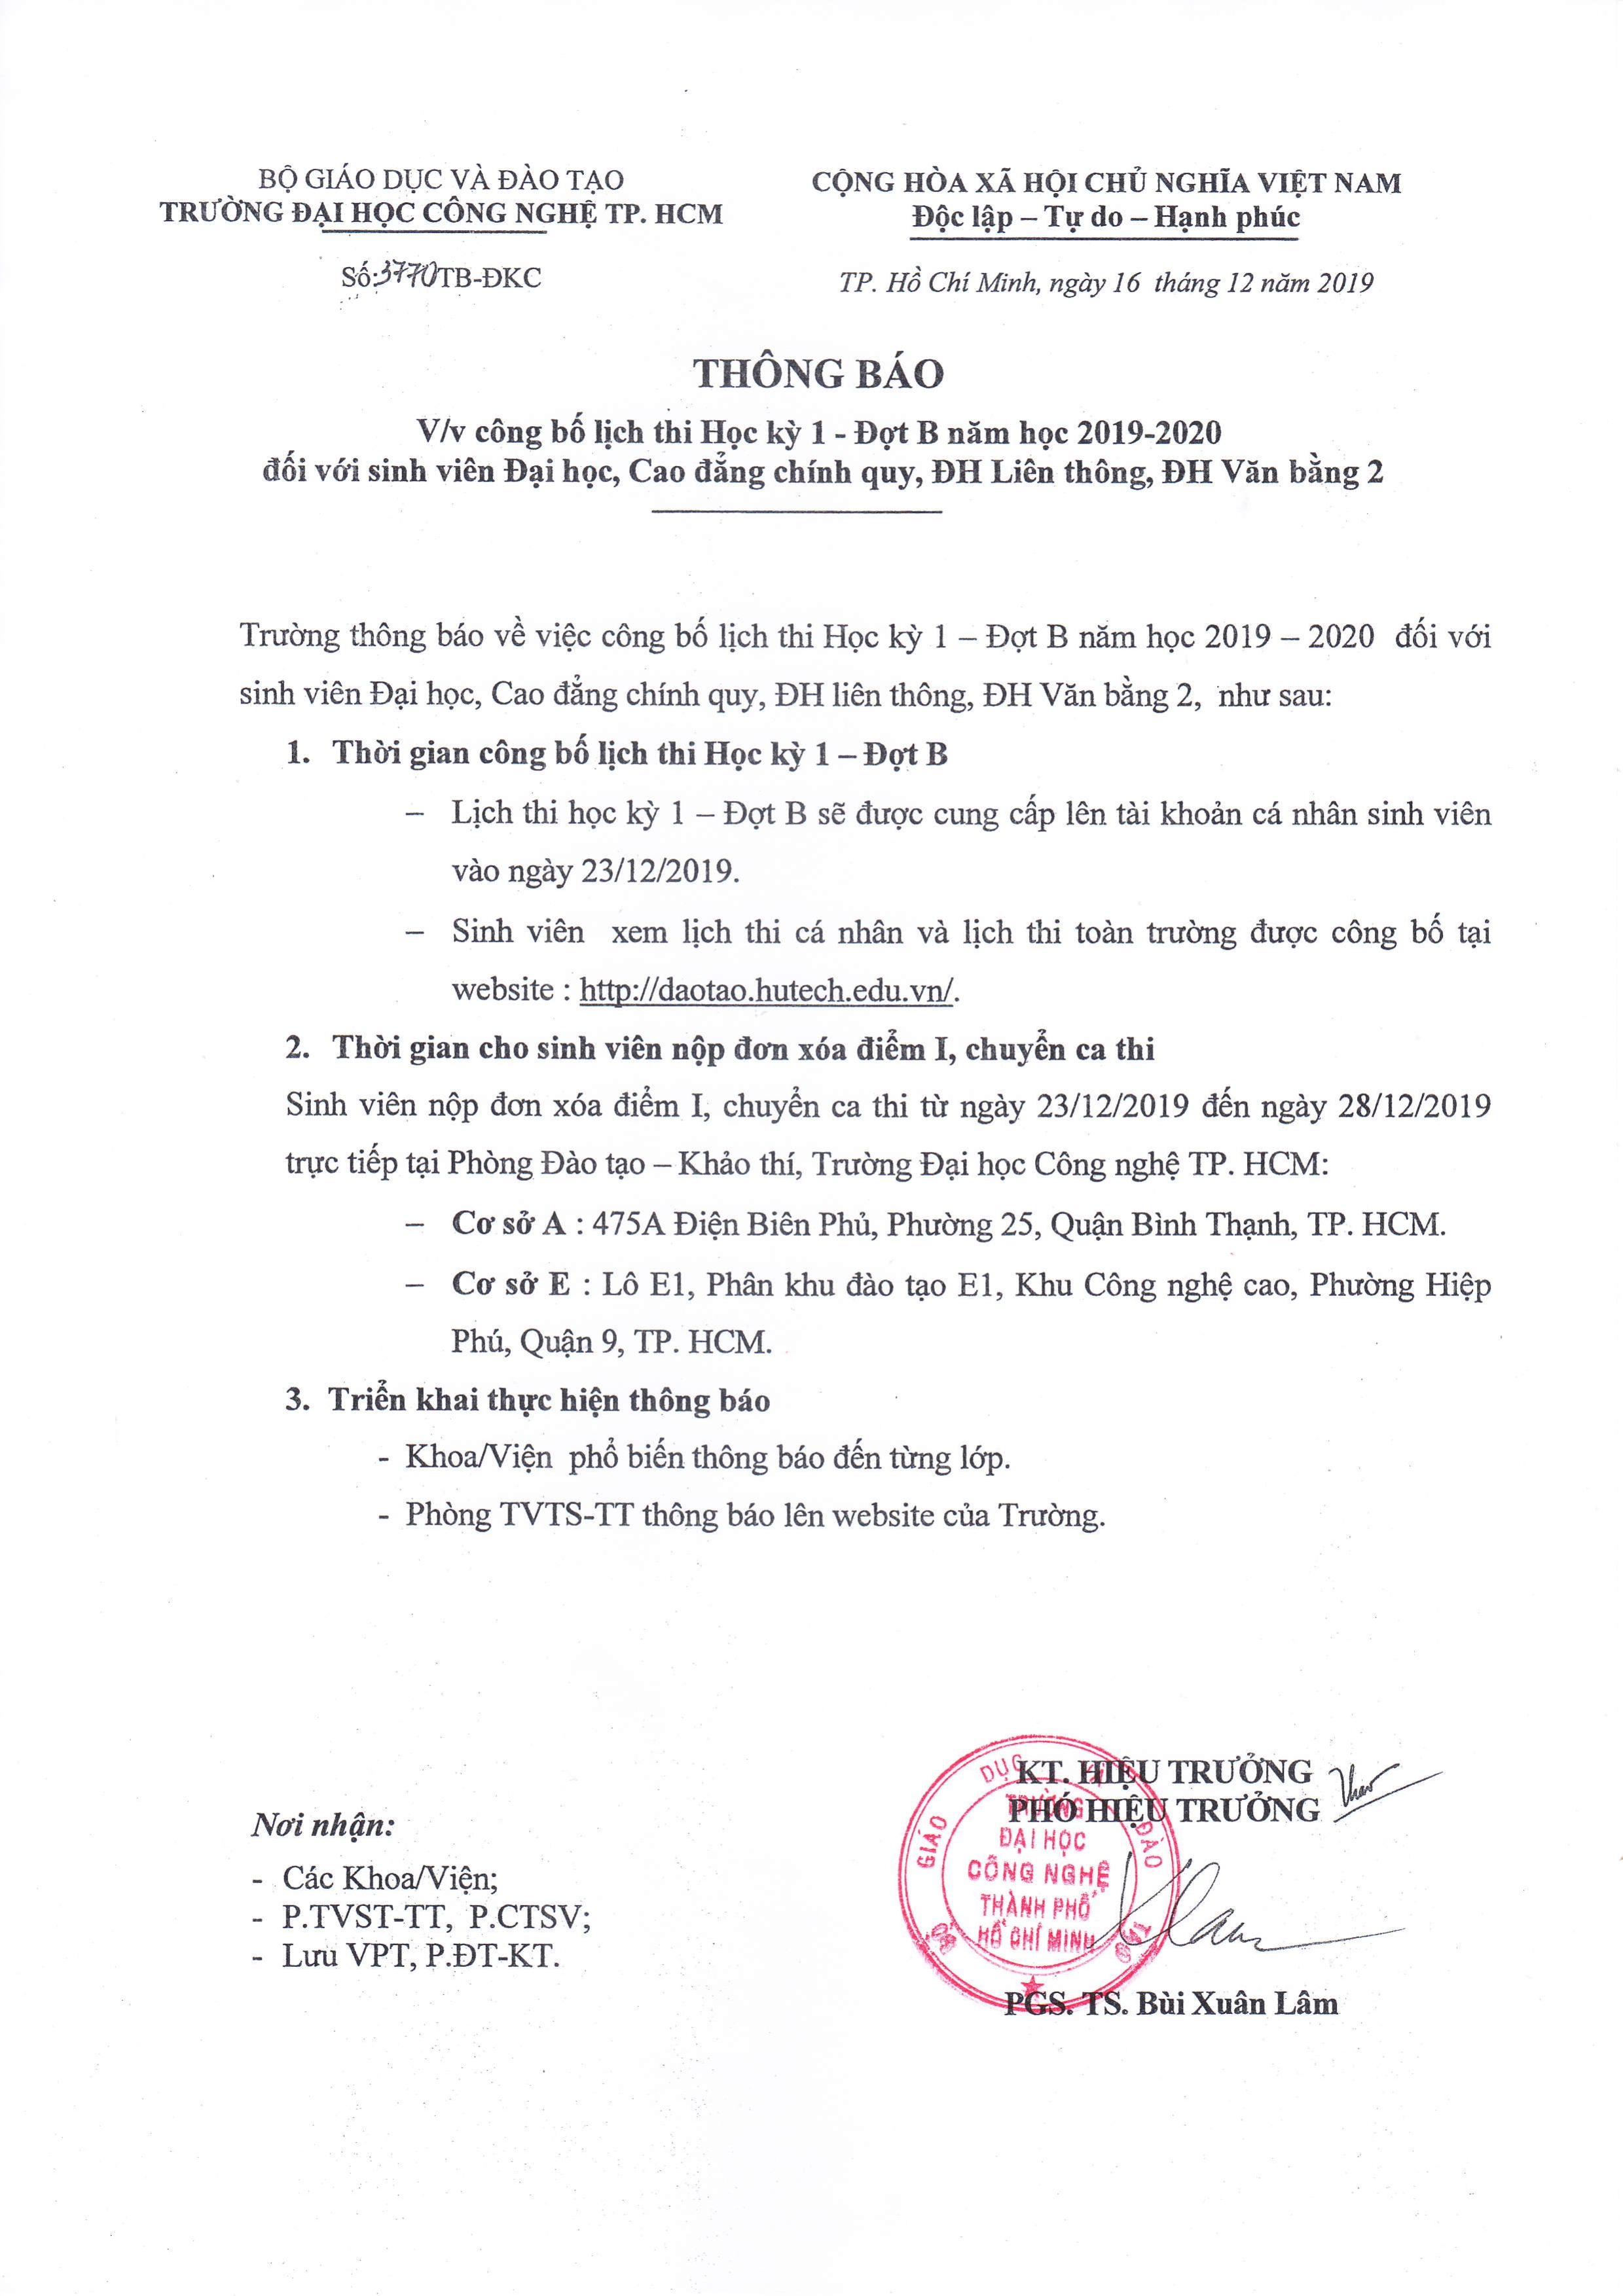 TB v/v công bố lịch thi HK1B NH 2019 - 2020 cho sinh viên 2